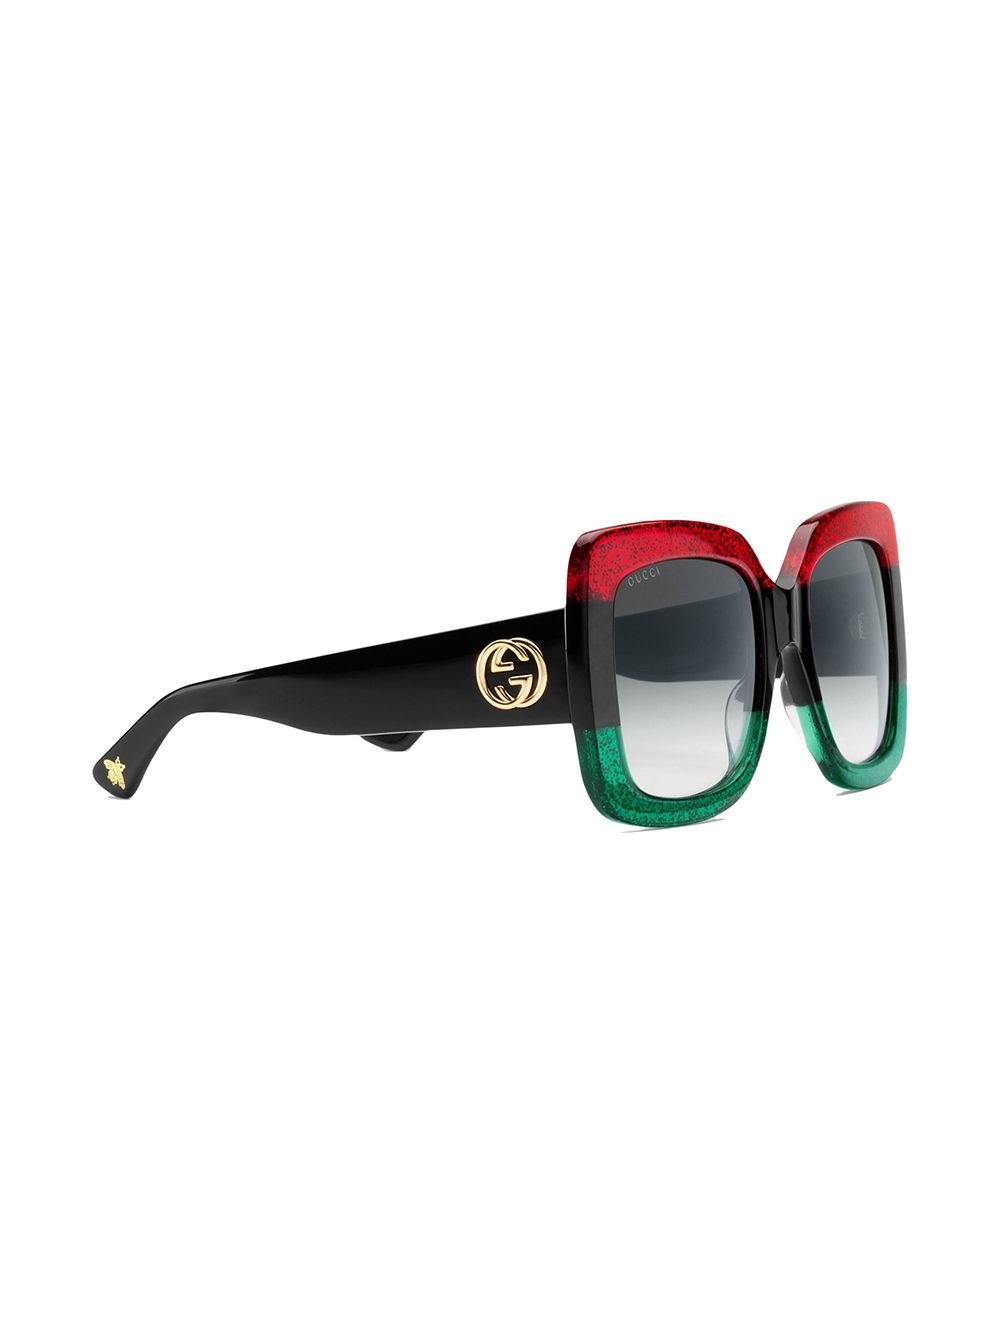 Купить очки гуччи. Очки гуччи. Gucci очки модель ‎663749 j0740 1012. Очки Gucci 2045. Очки гуччи красно зеленые.